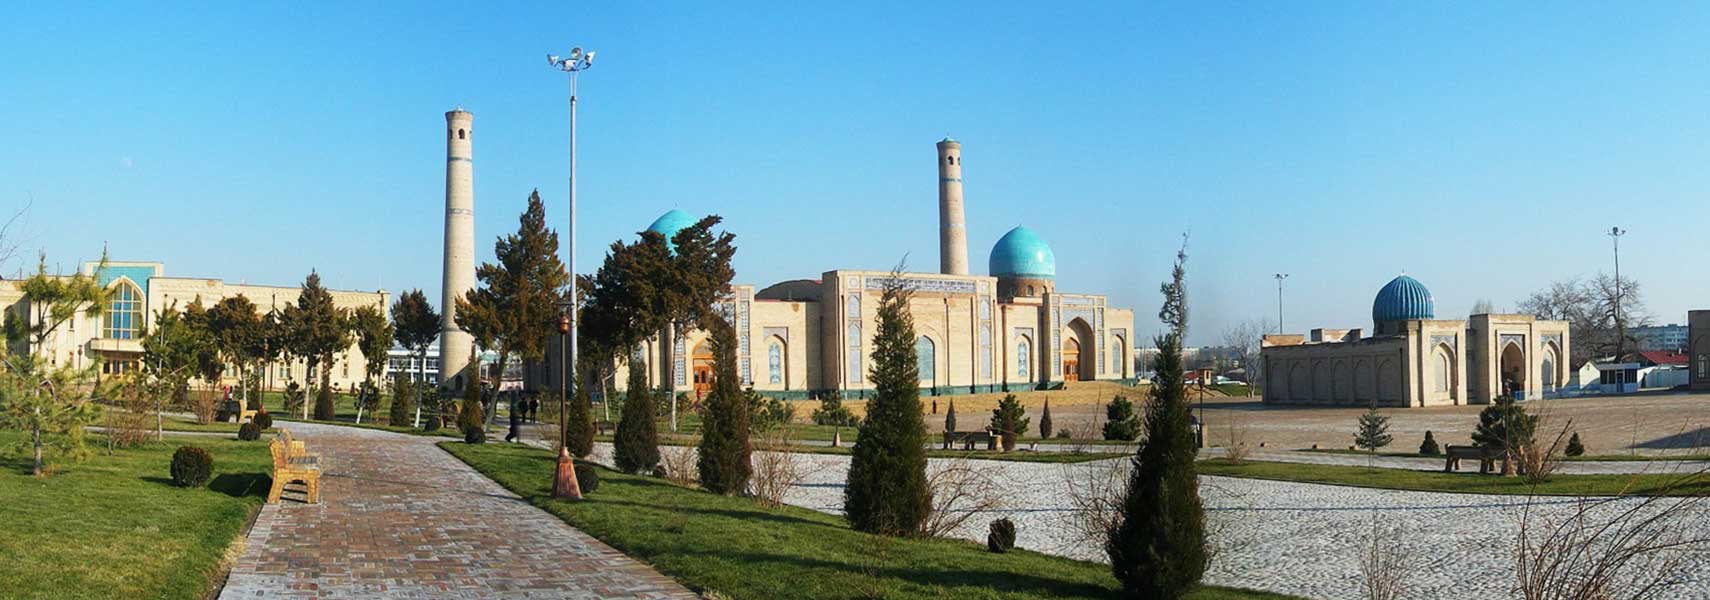 Tashkent women